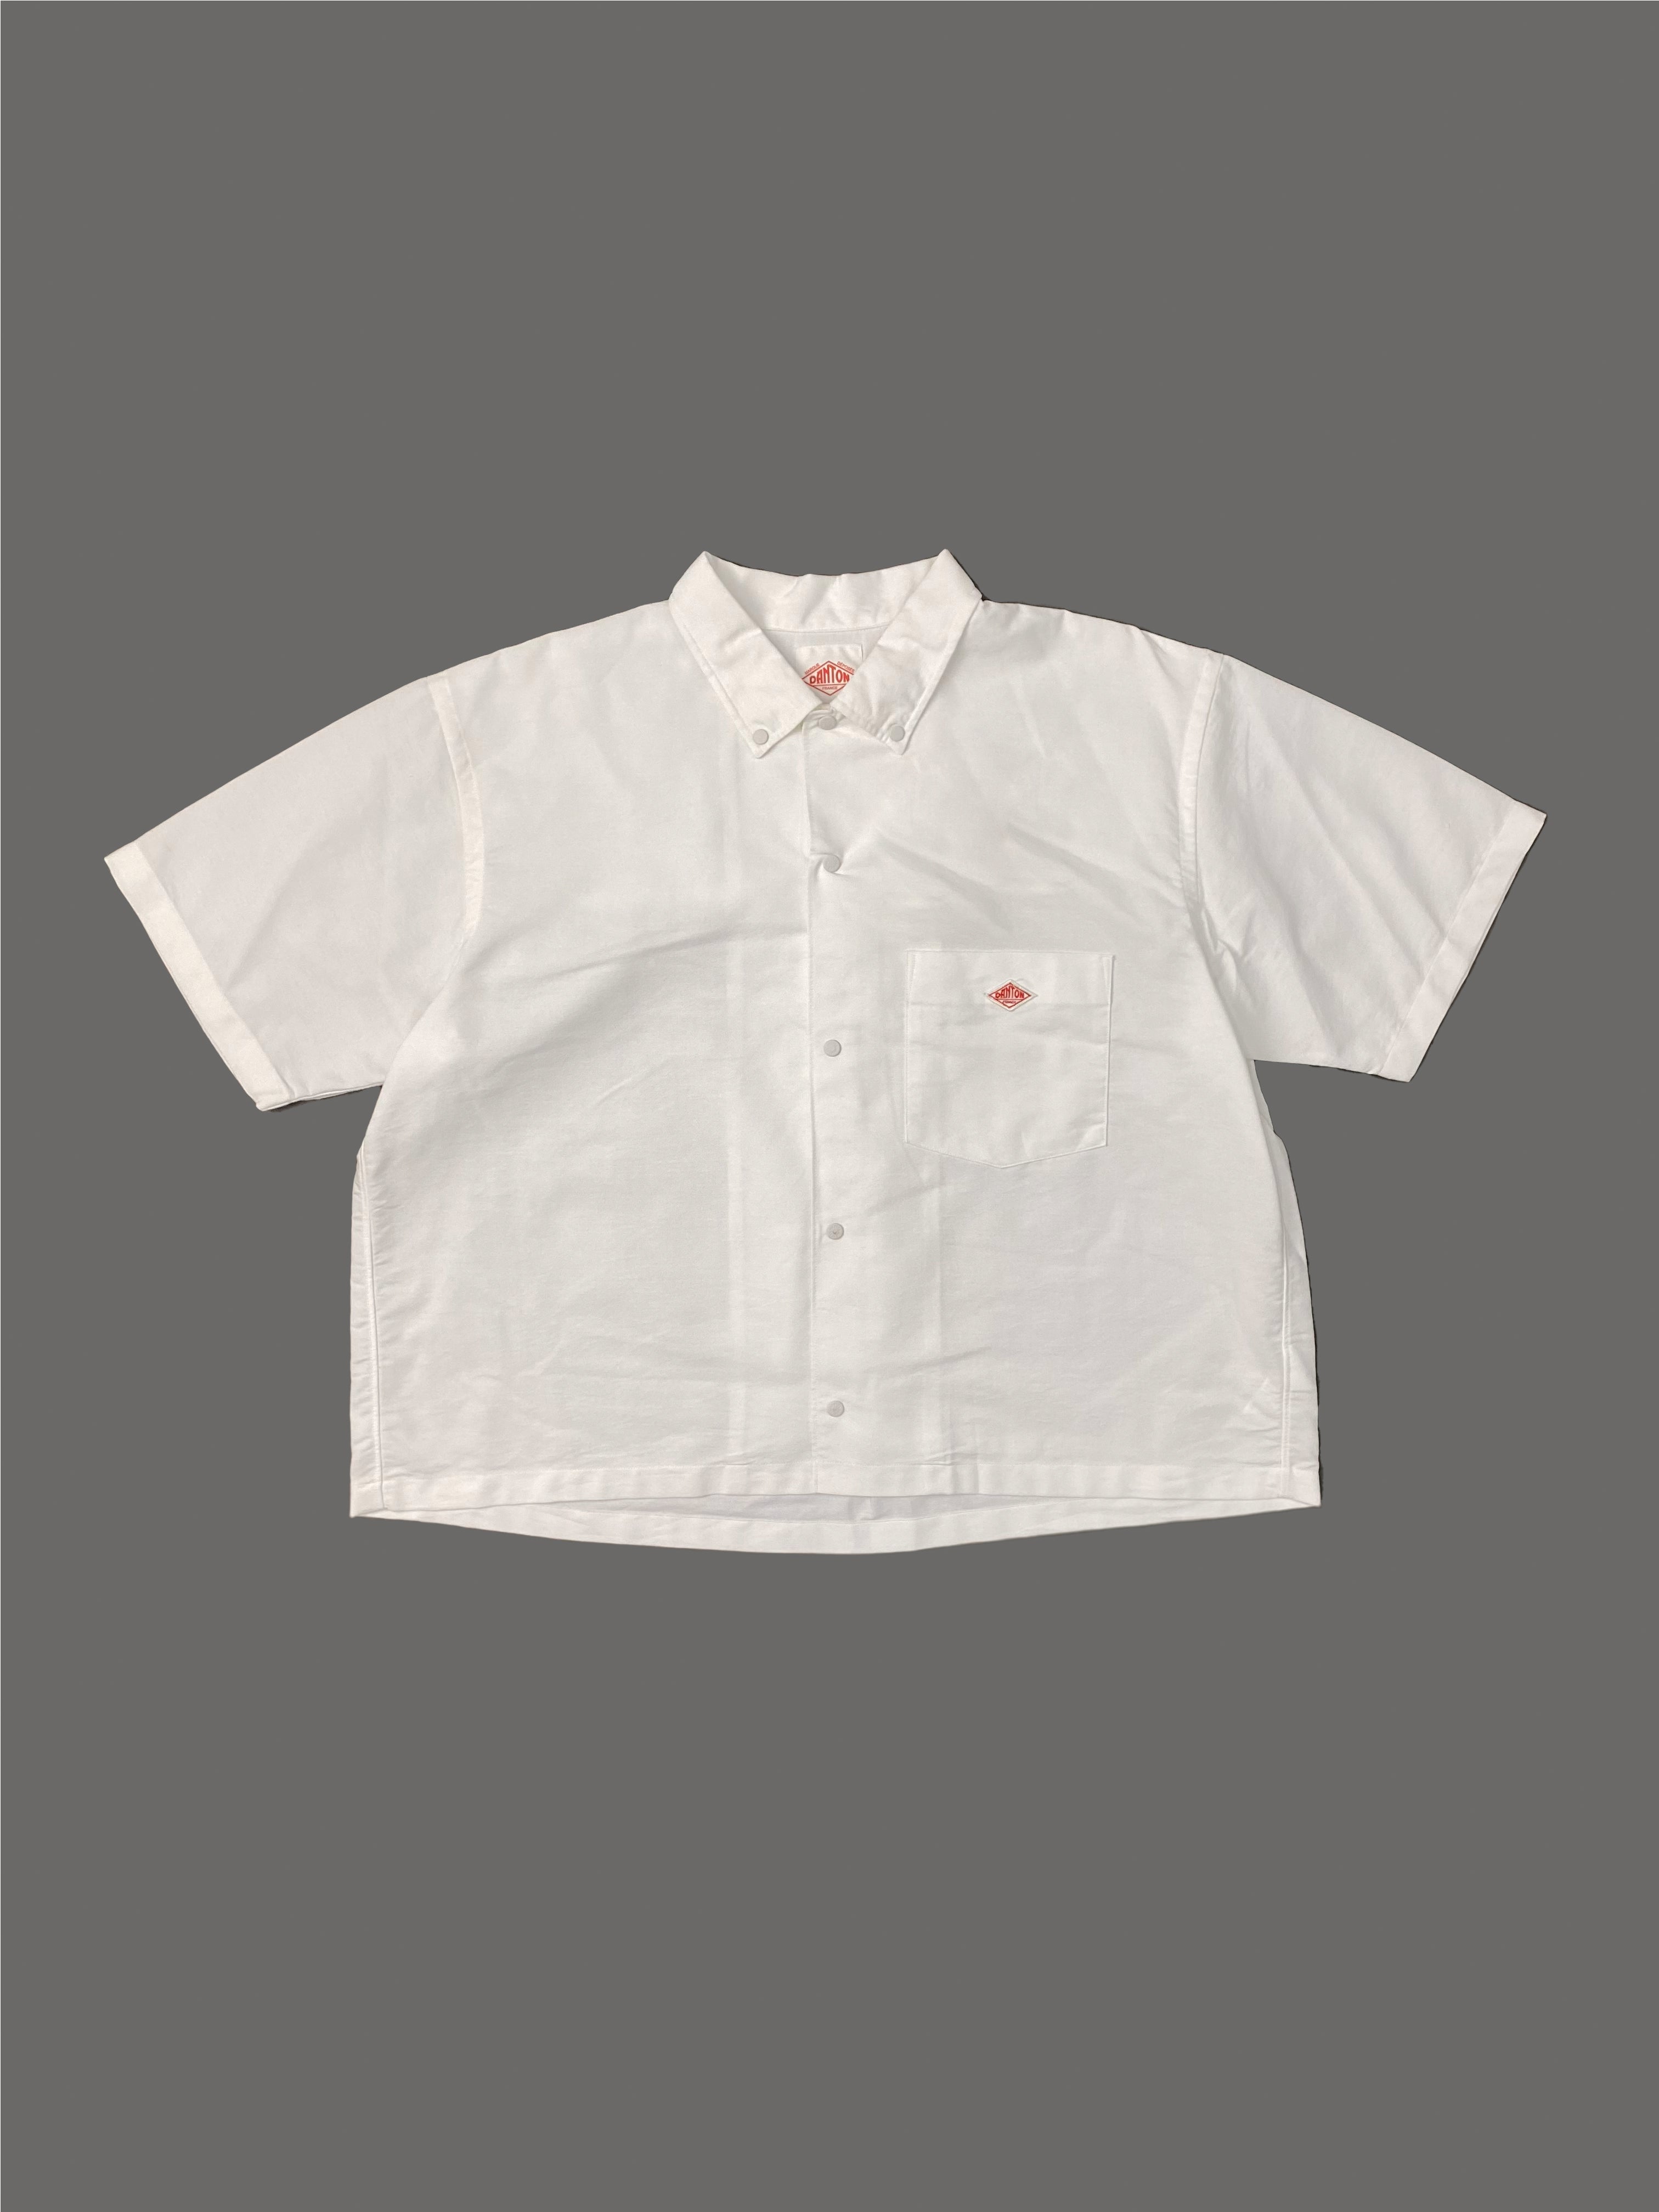 Women's Dot Button Short B.D S/S Shirt DT-B0117 CMX | White